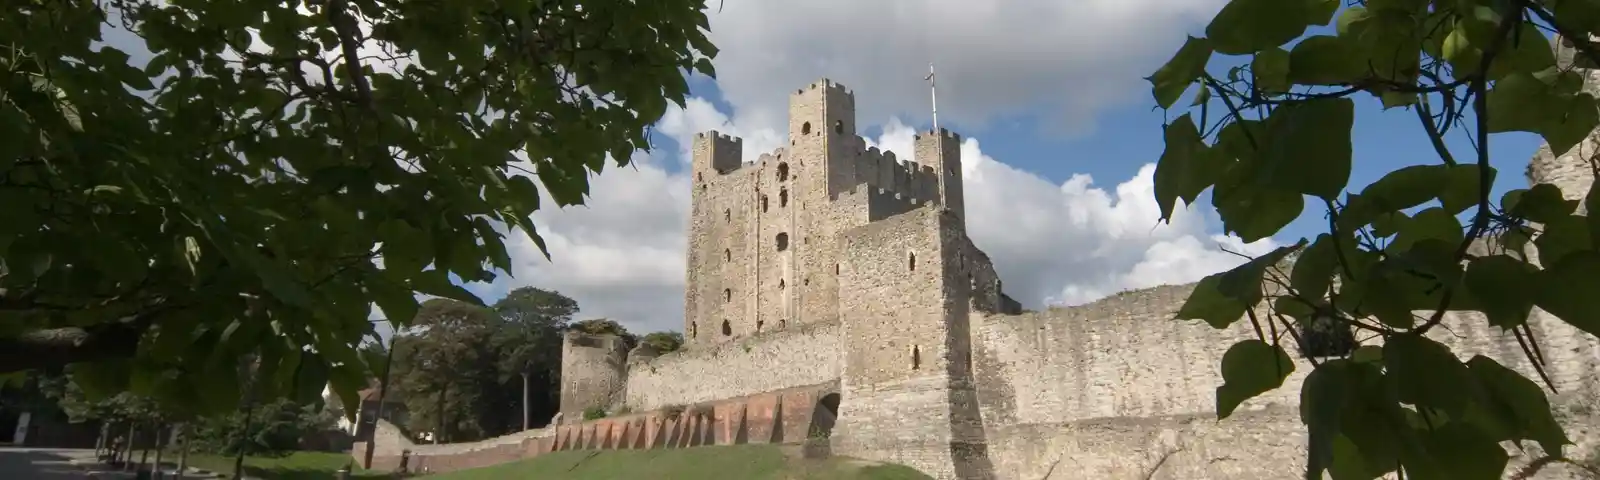 Rochester-castle.JPG